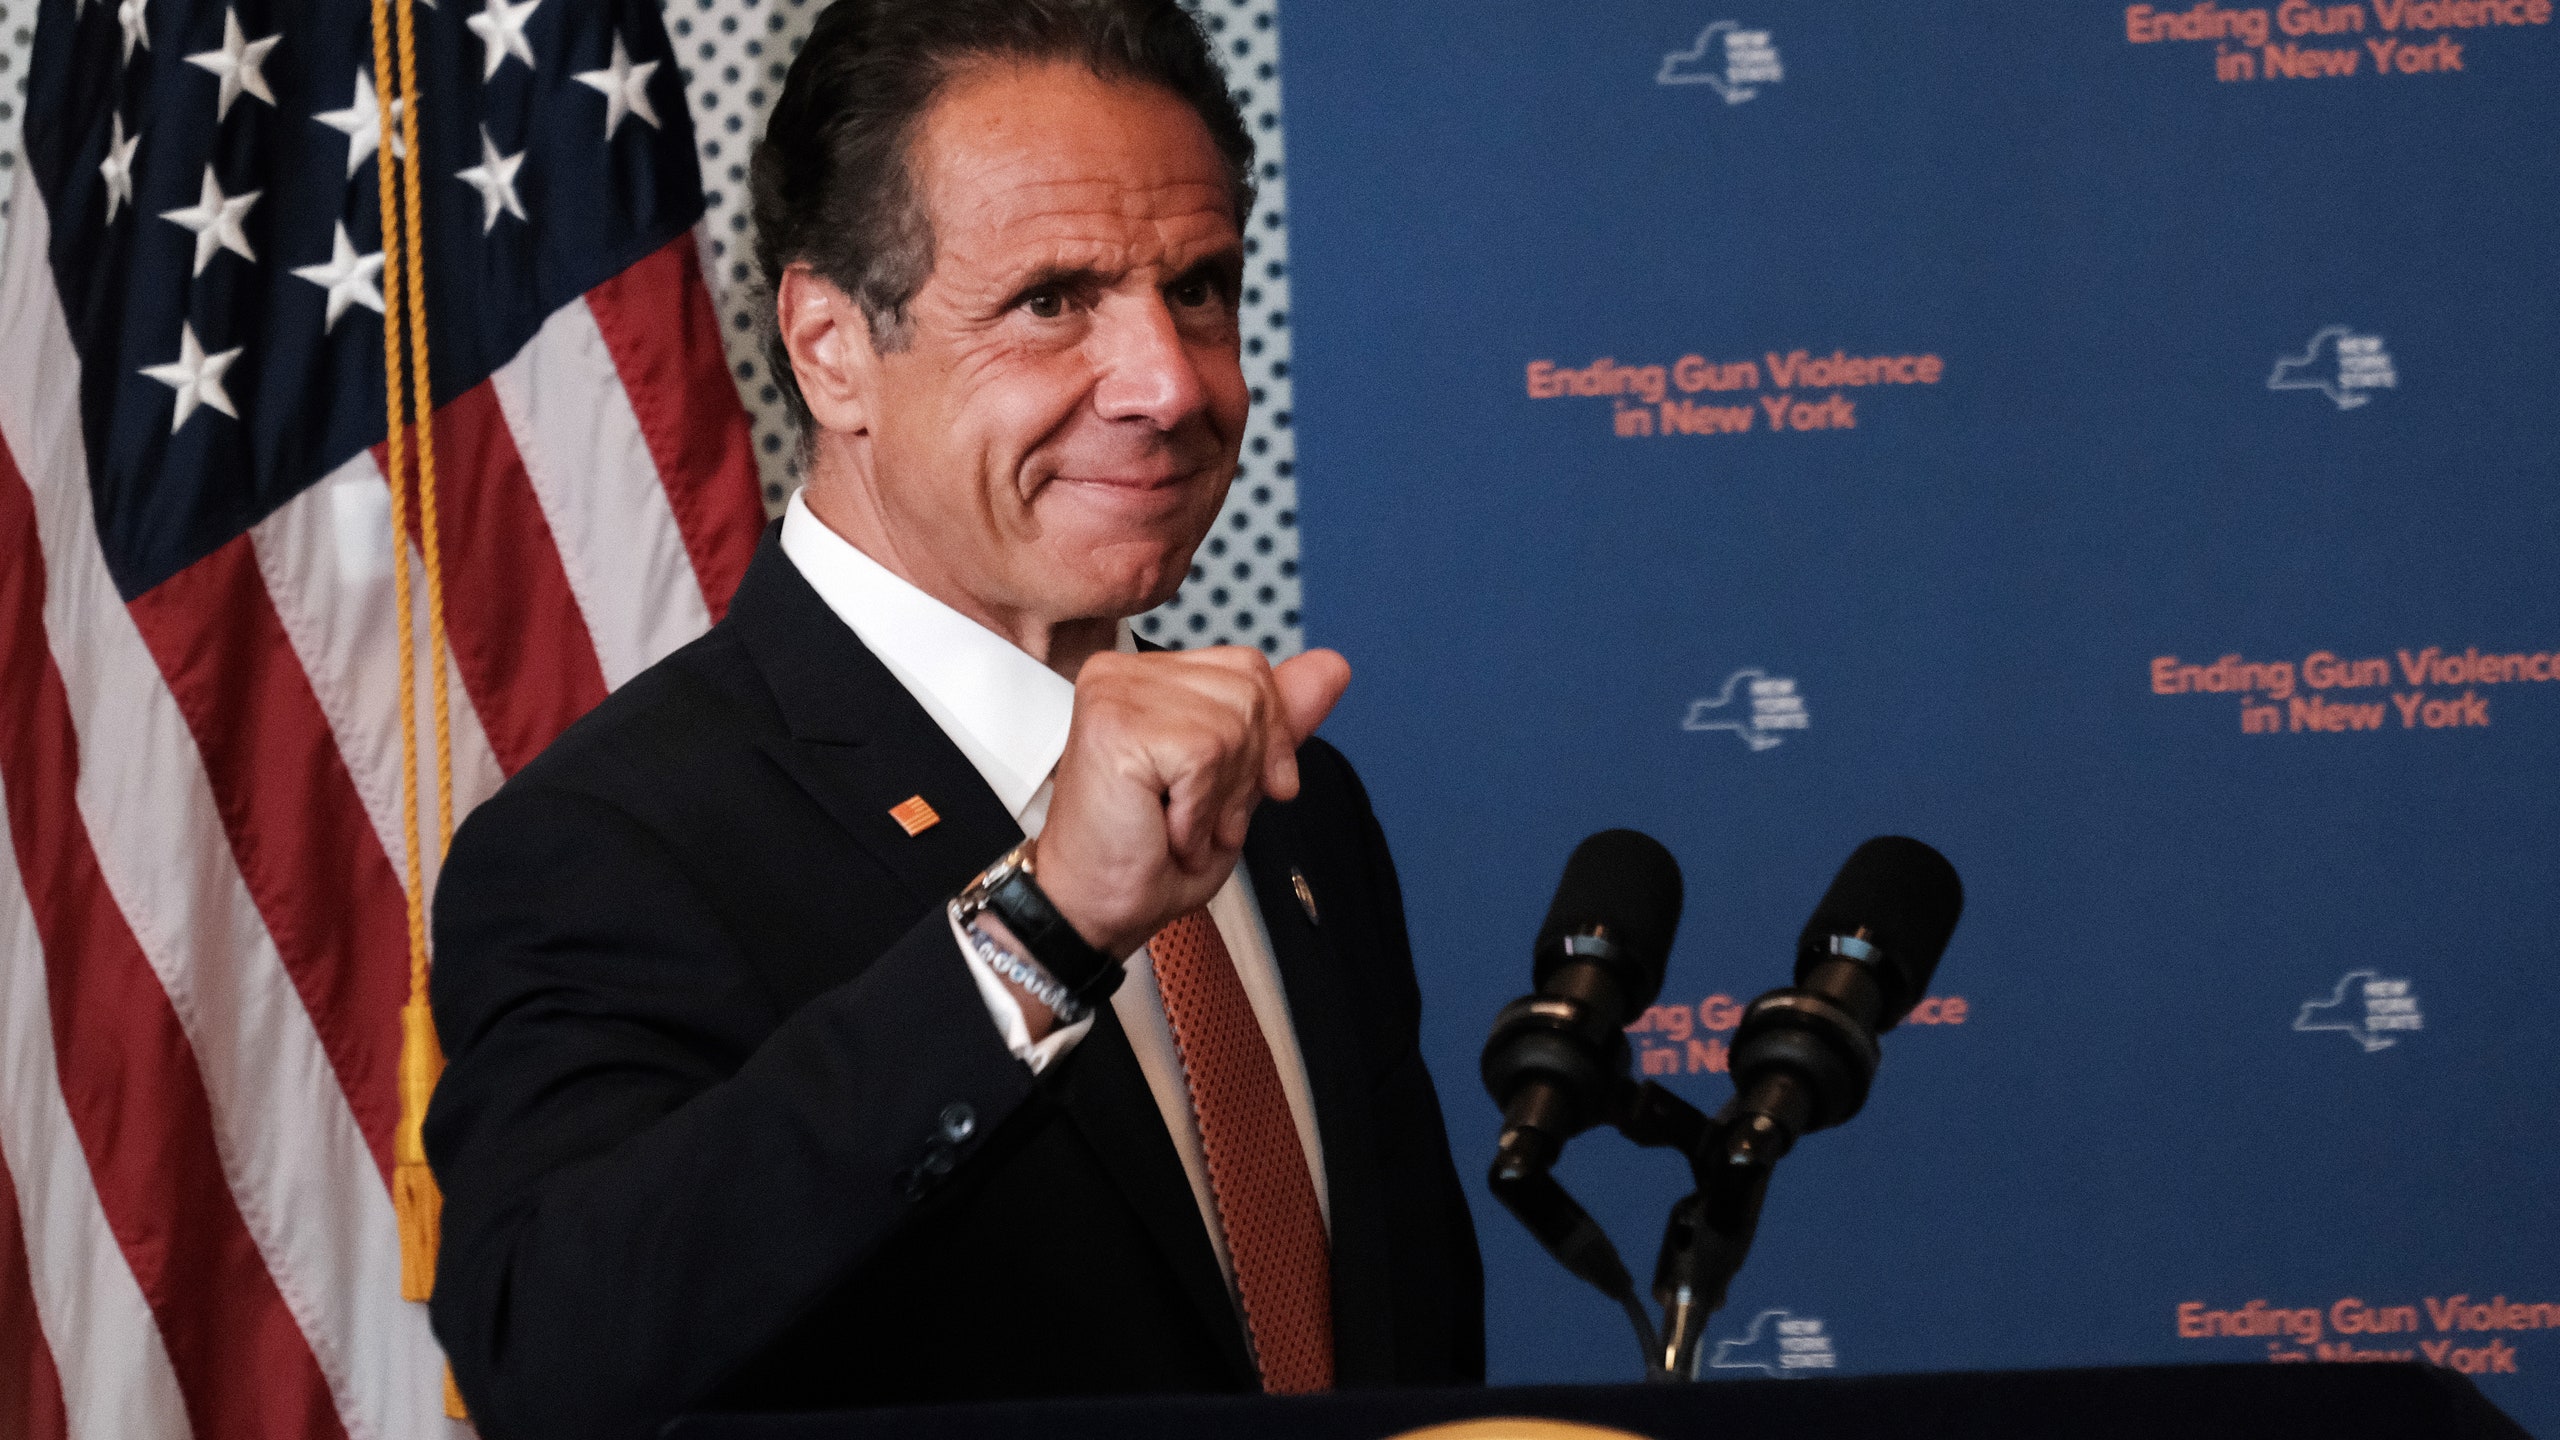 11 женщин обвиняют губернатора штата НьюЙорк в домогательствах